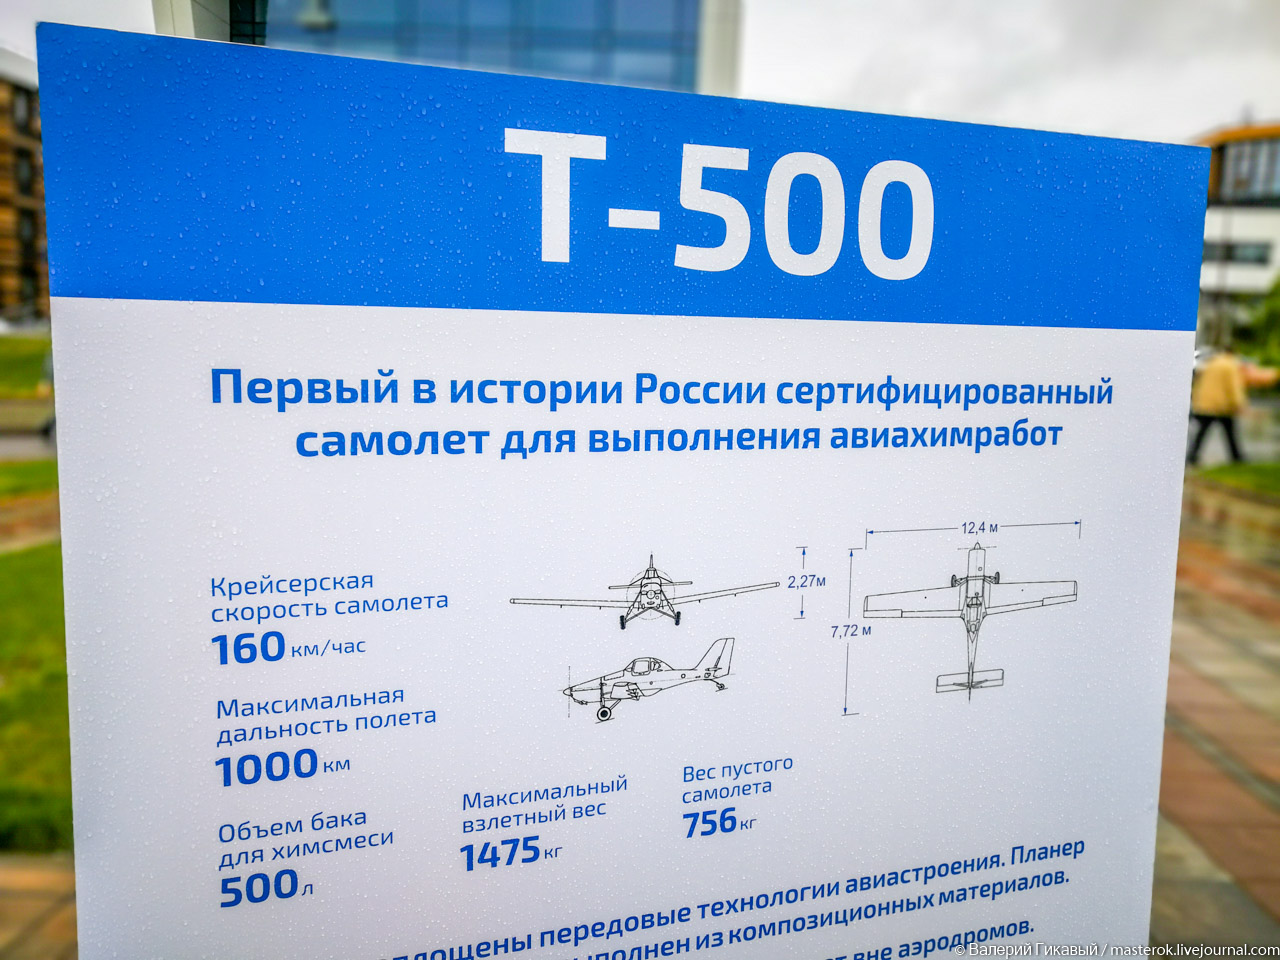 В России создается новое производство самолетов Казань,#ципр